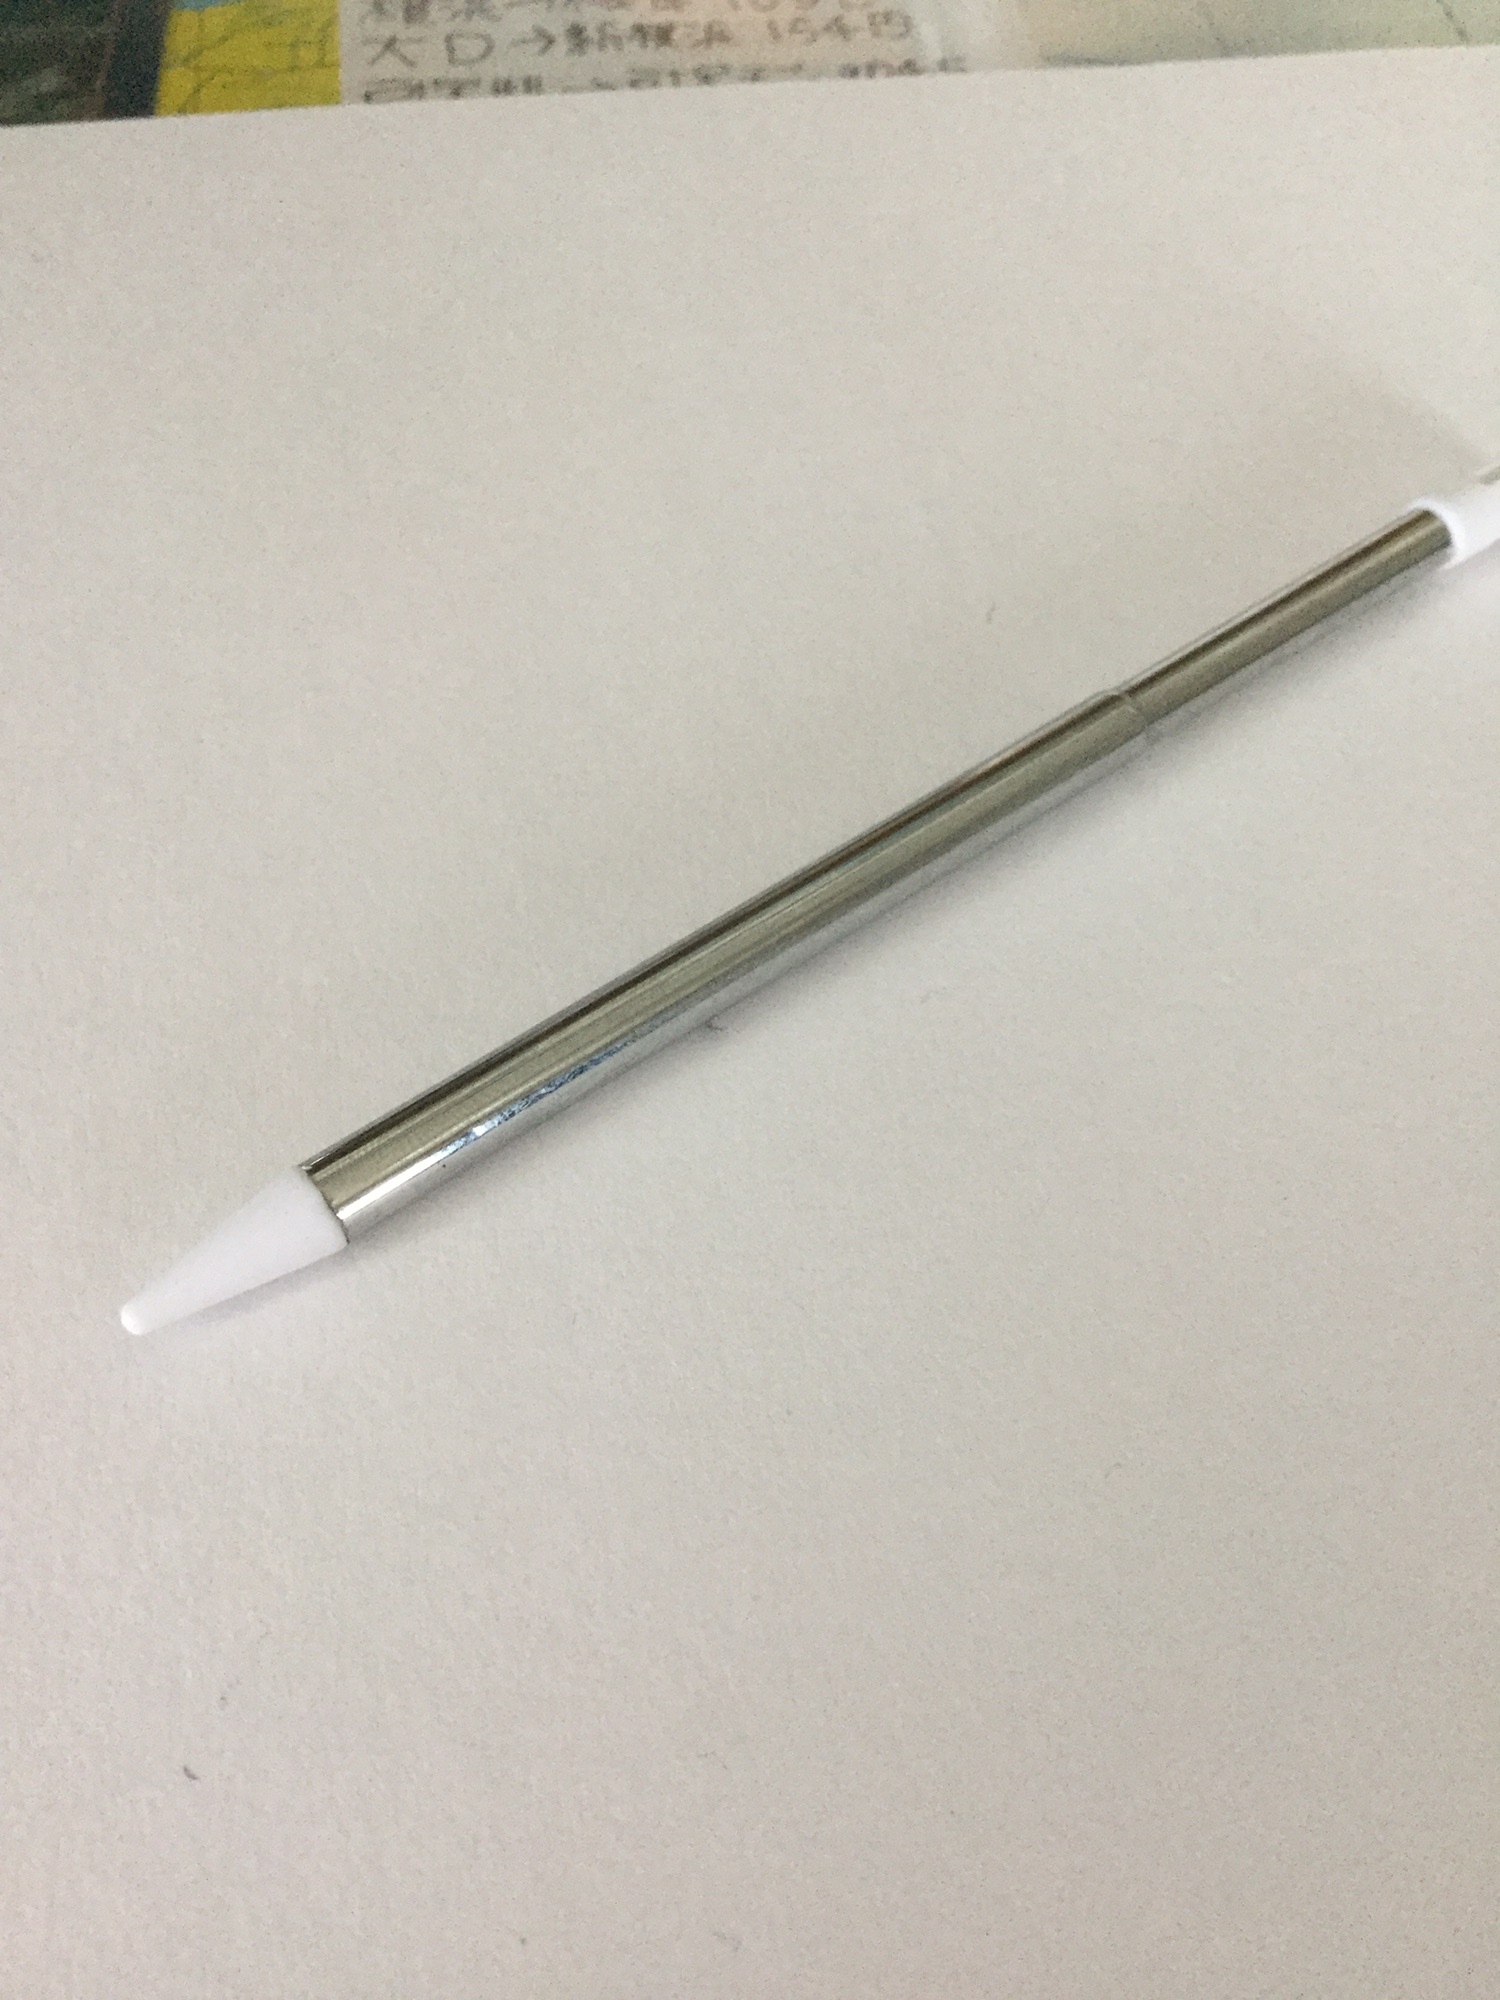 ダイソーでnewニンテンドー3DSLL専用のタッチペンを購入しました